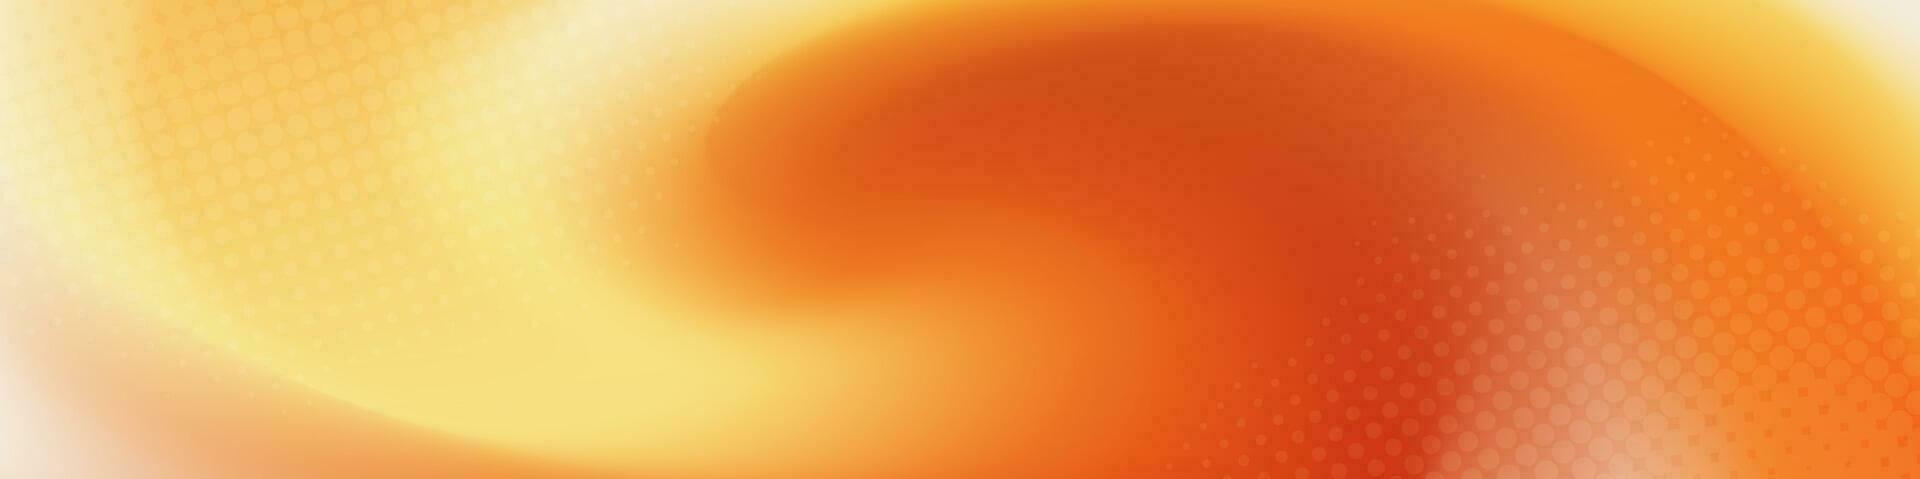 abstrait bannière avec Orange blanc couleur. image est une visuellement attirant conception atout pour utilisation dans annonces, sites Internet, ou social médias des postes à ajouter une moderne toucher à le visuels. vecteur